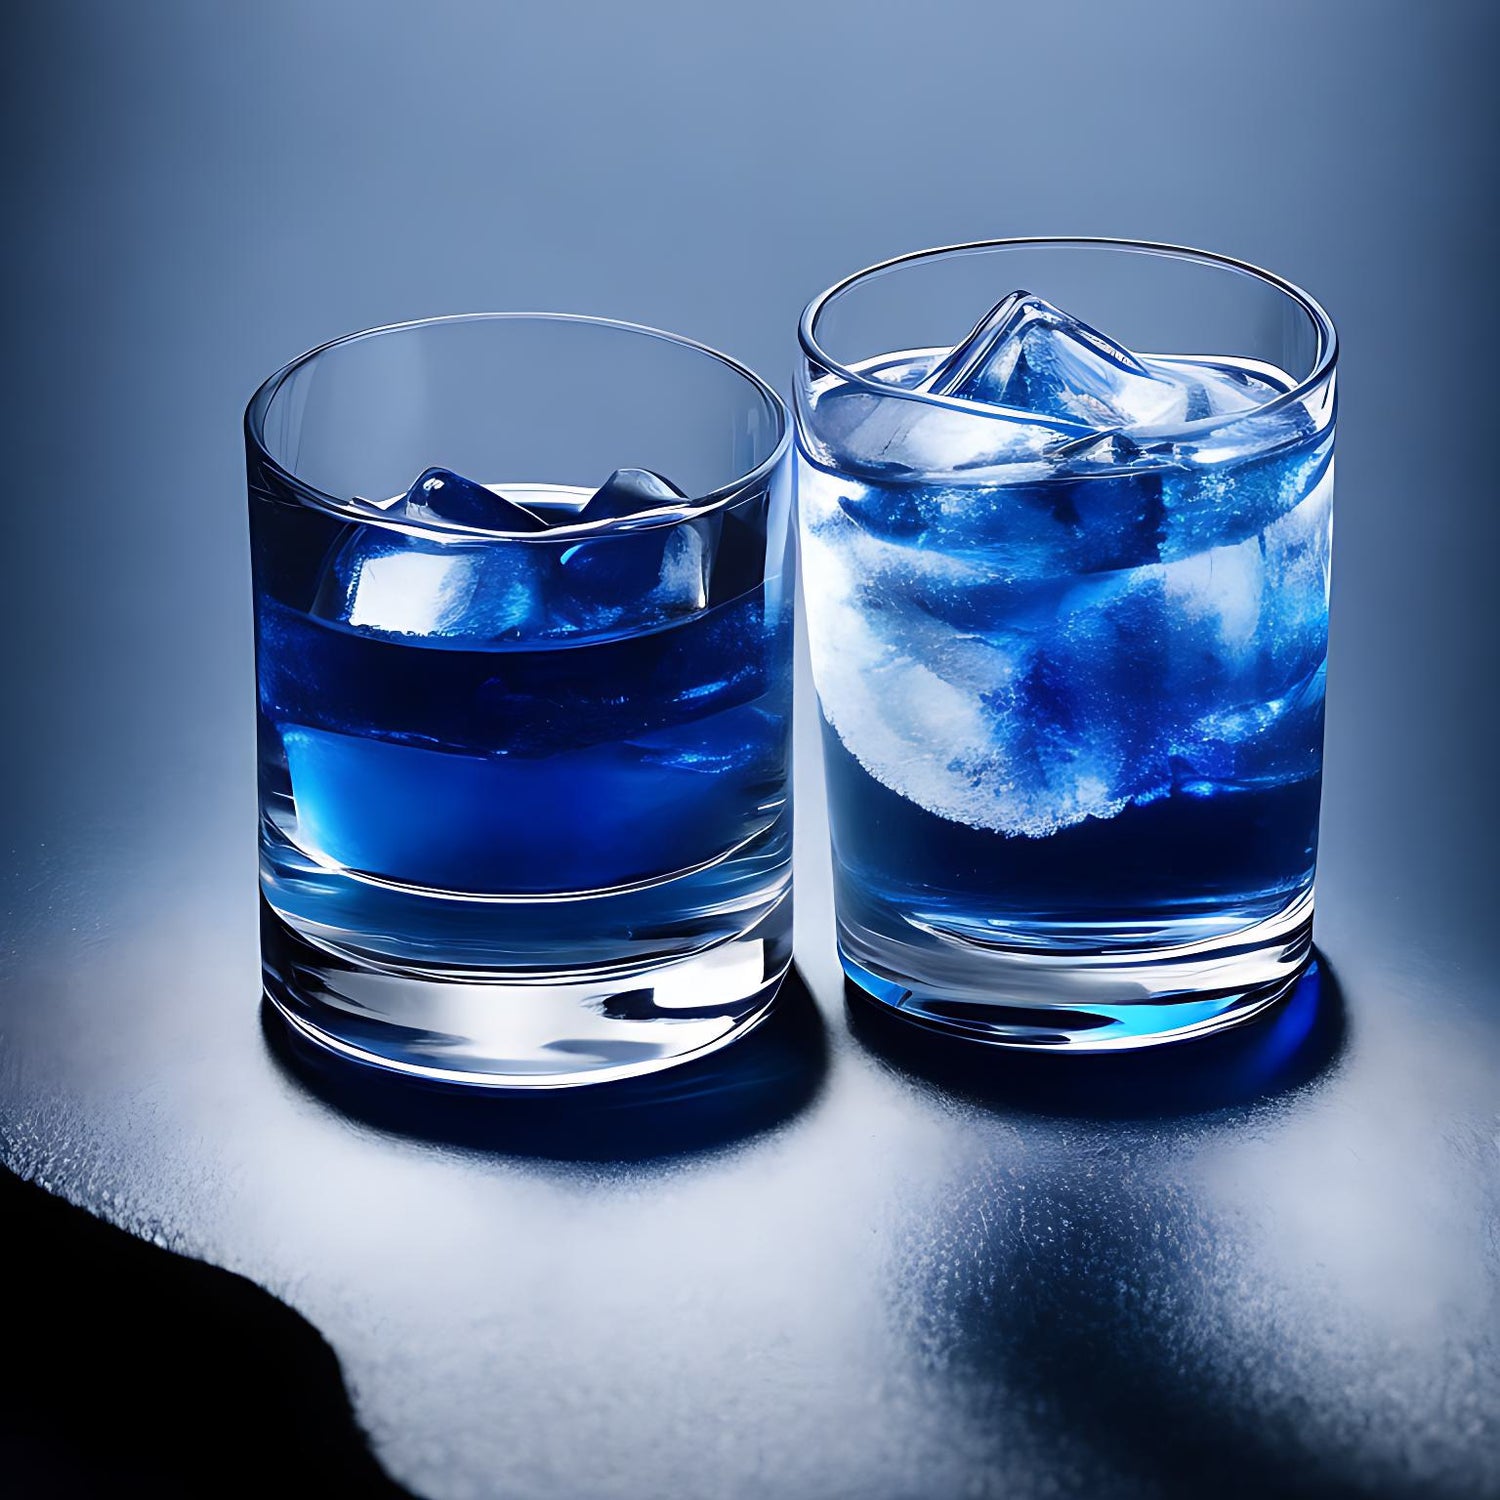 「morning glow gin」は、ローズとラベンダーのフローラルな香りとバタフライピーの美しい青でリラックス出来るジンです。柑橘果汁で青から紫色へとグラデーションも楽しめます。天然素材から抽出された成分が含まれており、低糖質や無添加で健康志向の方におすすめです。ストレートで飲むのも楽しいですが、ソーダやトニックウォーターで割ると爽やかで美味しいです。かき氷にかけても大人のデザートとして美味しいです。モーニンググロージンを他のスピリッツカラーズの赤の「spice girl」 と黄色の「reflexion」を混ぜてレインボーカラーで映えちゃいます。カクテル 色変化 うまい ブルー レモン 飲み比べ 虹色 フルーティー お酒 蒸留所 流行 クラフトジ ン混ぜる 夜明 炭酸 体に良い おいしい 映える おしゃれ 映えちゃう 人気 岐阜 スティルダムサガ ECサイト クラフトジン 通販